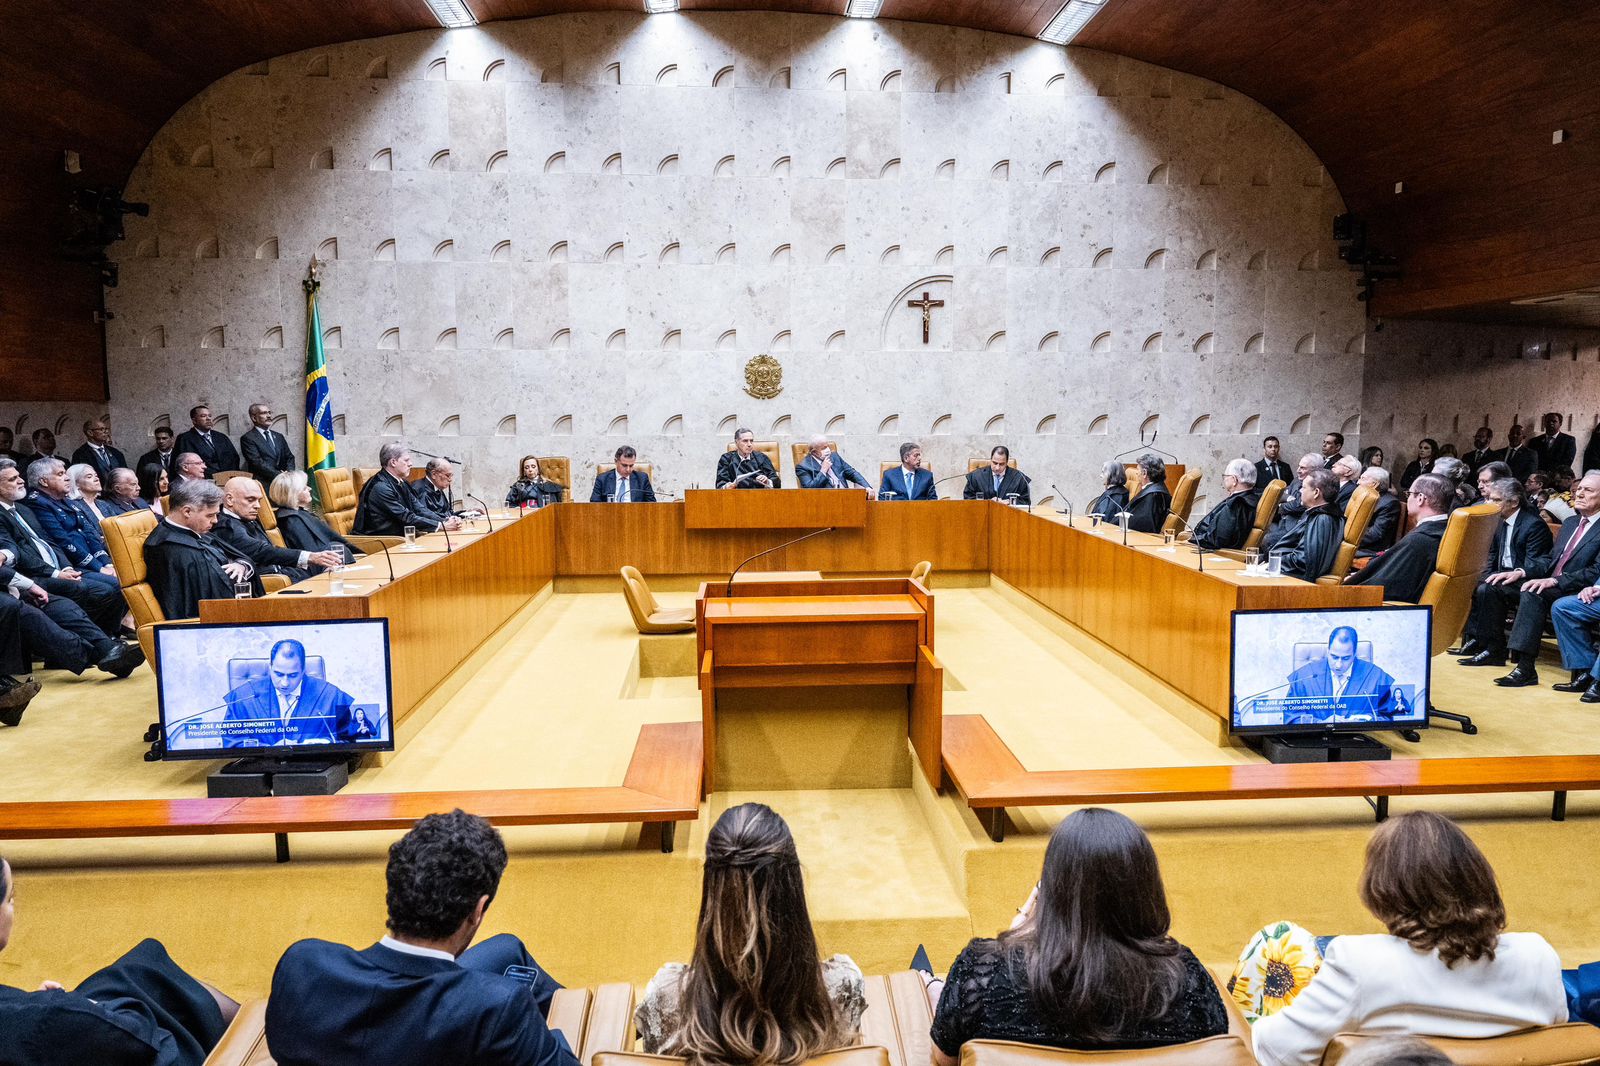 Sessão solene de posse do ministro Luís Roberto Barroso como o novo presidente do Supremo Tribunal Federal (STF) e do Conselho Nacional de Justiça (CNJ)